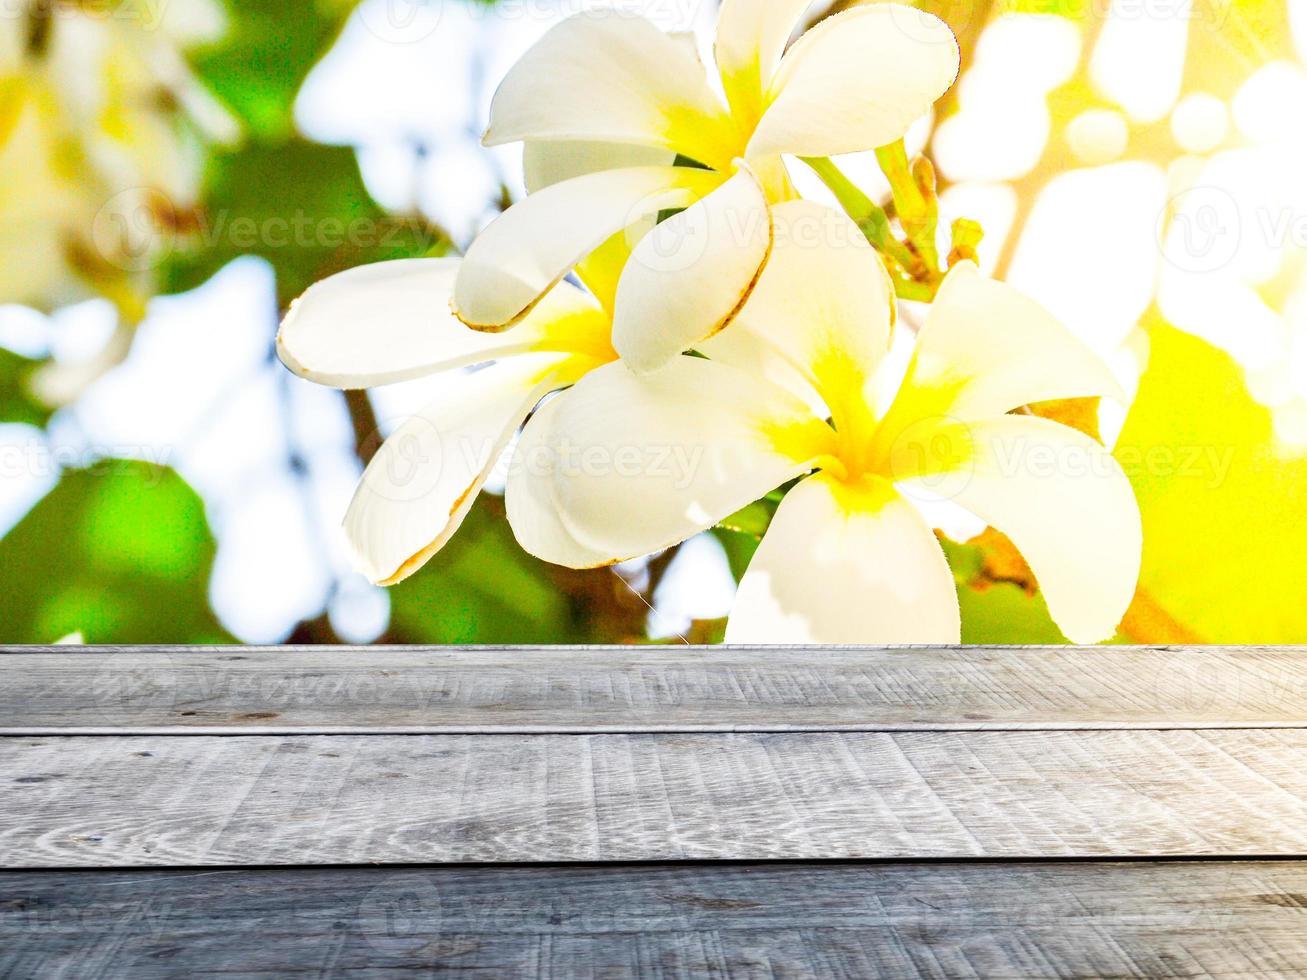 leeg oud houten tafel wit frangipani bloem achtergrond met zonlicht Product advertentie ontwerp sjabloon achtergrond foto